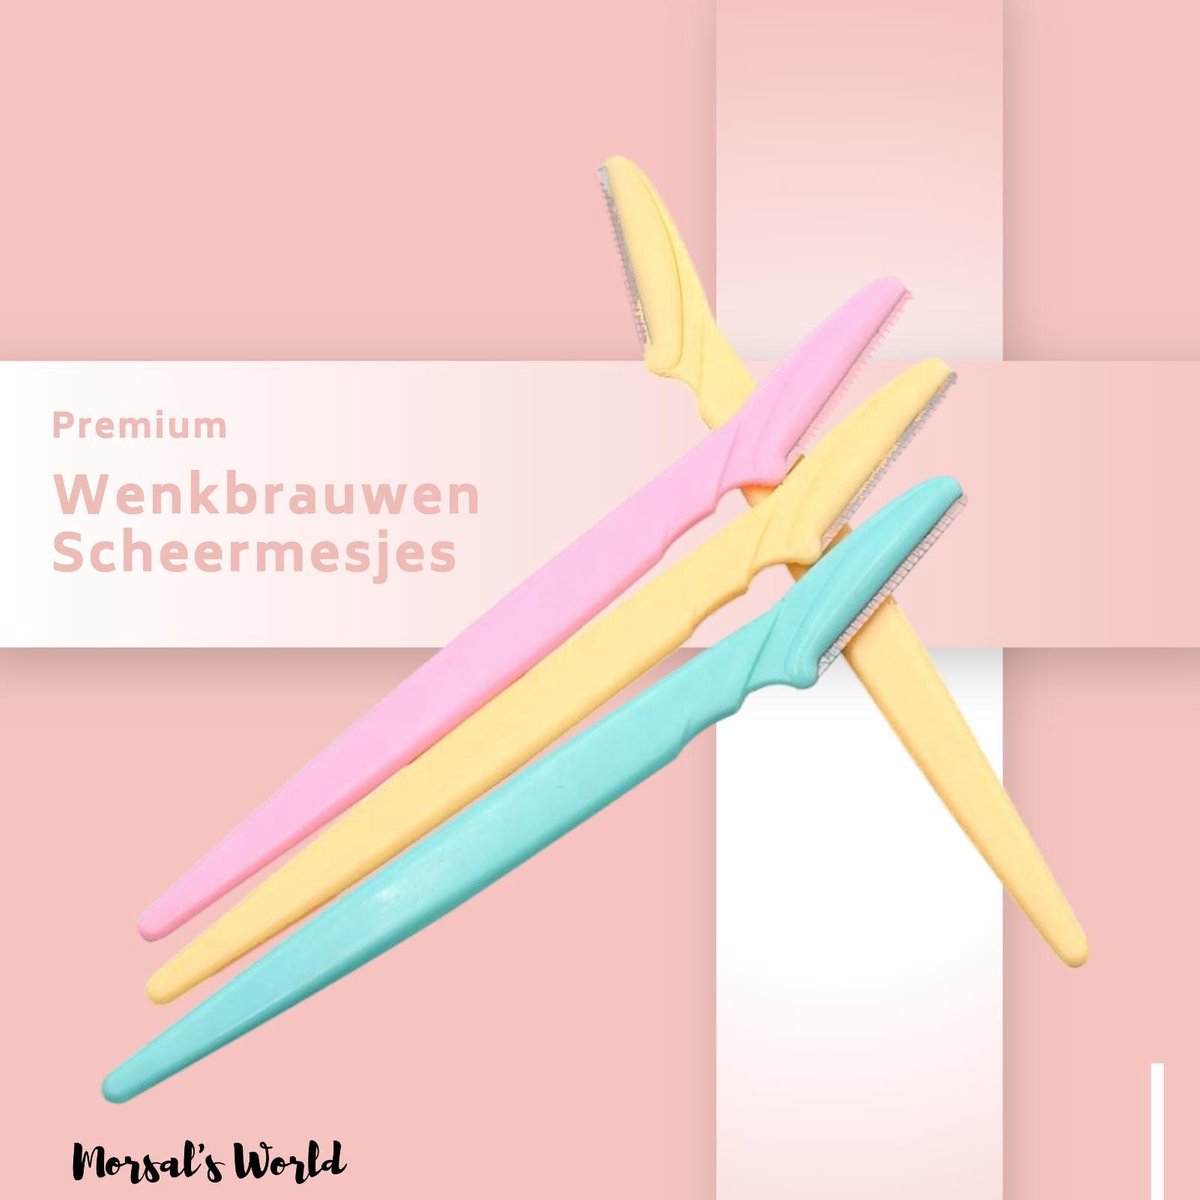 Tinkeke Premium Wenkbrauwen Scheermesjes  - Haar mesje - Set - 3 Stuks -14.5x3.8cm -Wenkbrauw Trimmer - Merkloos